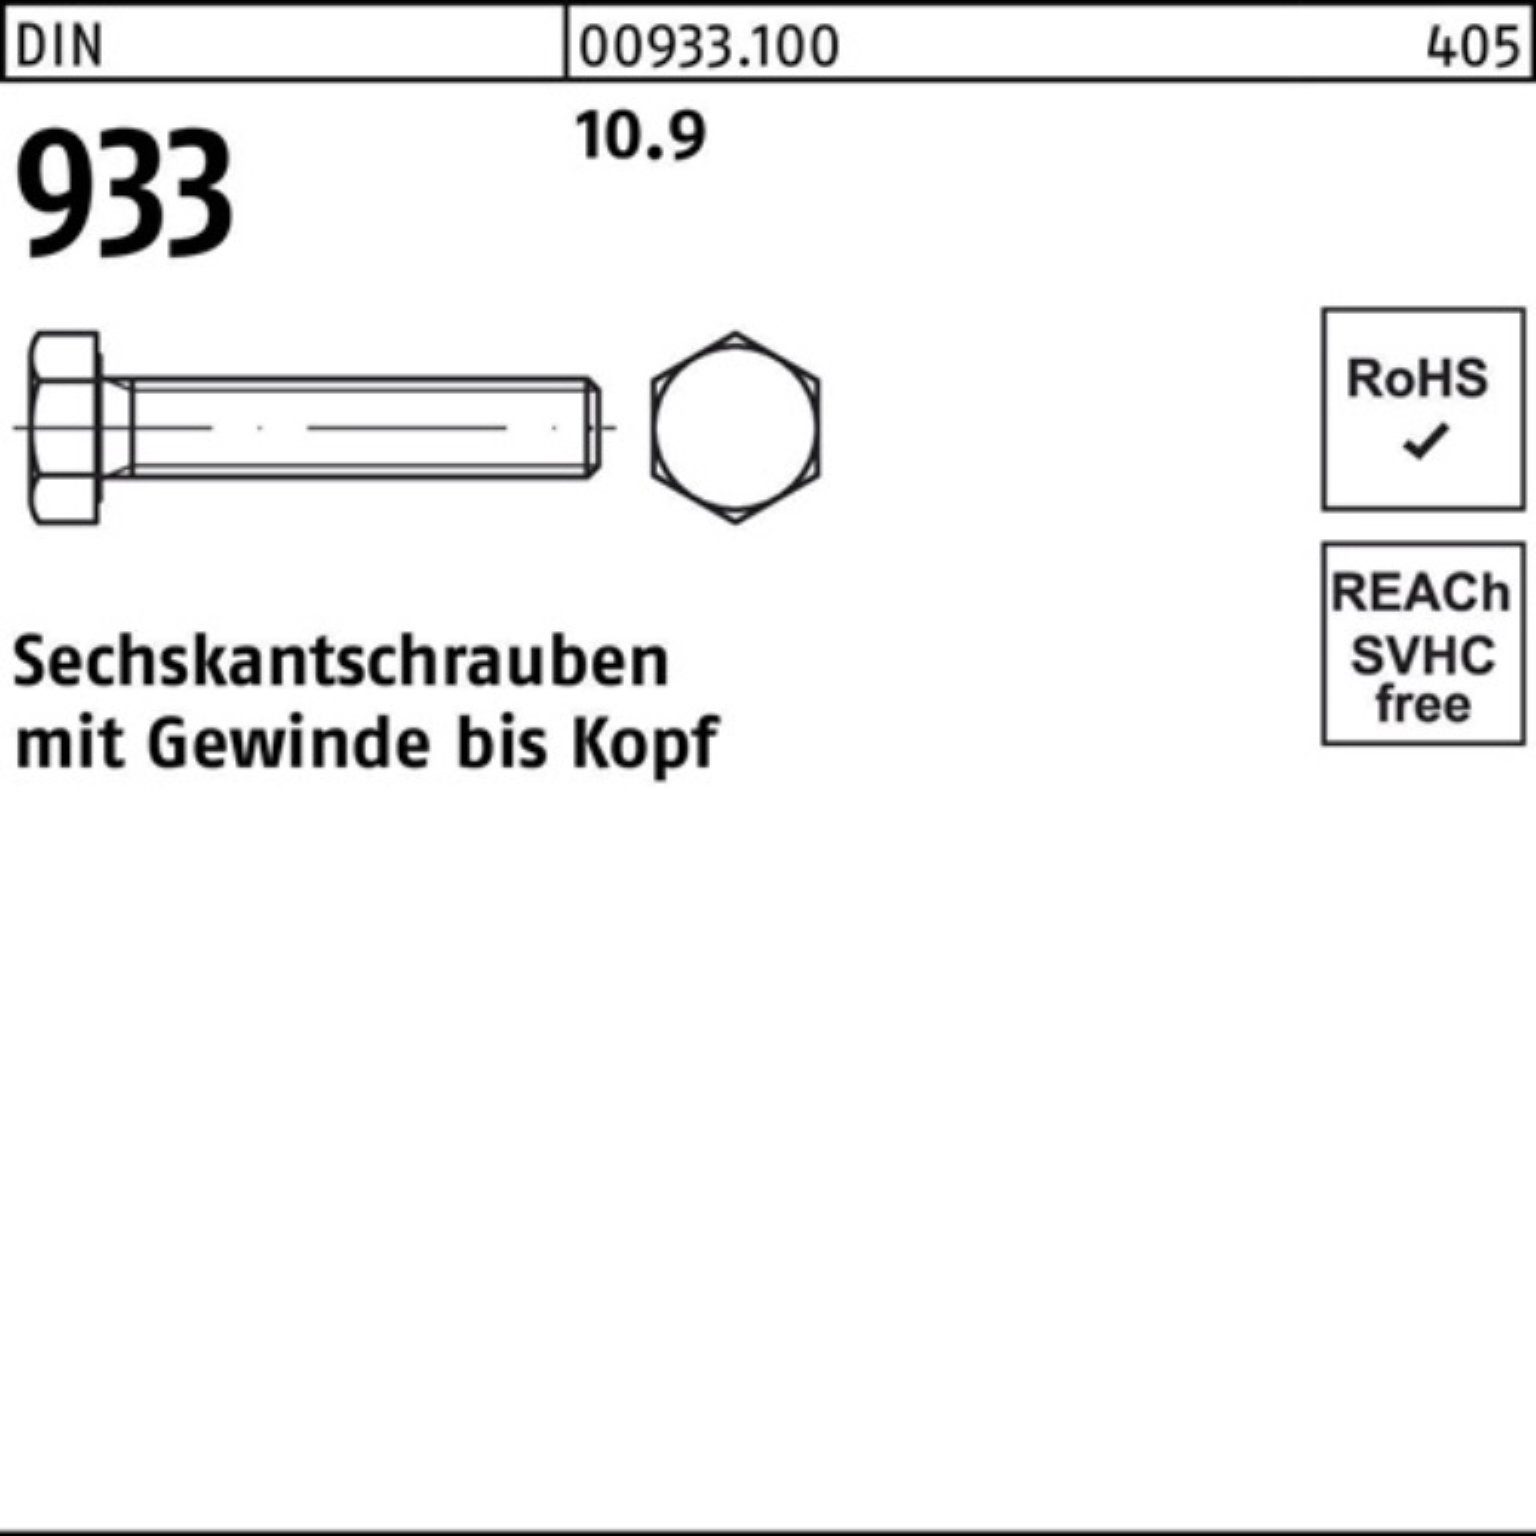 Reyher Sechskantschraube 933 100er DIN 1 Stück VG M30x Pack 55 933 DIN Sechskantschraube 10.9